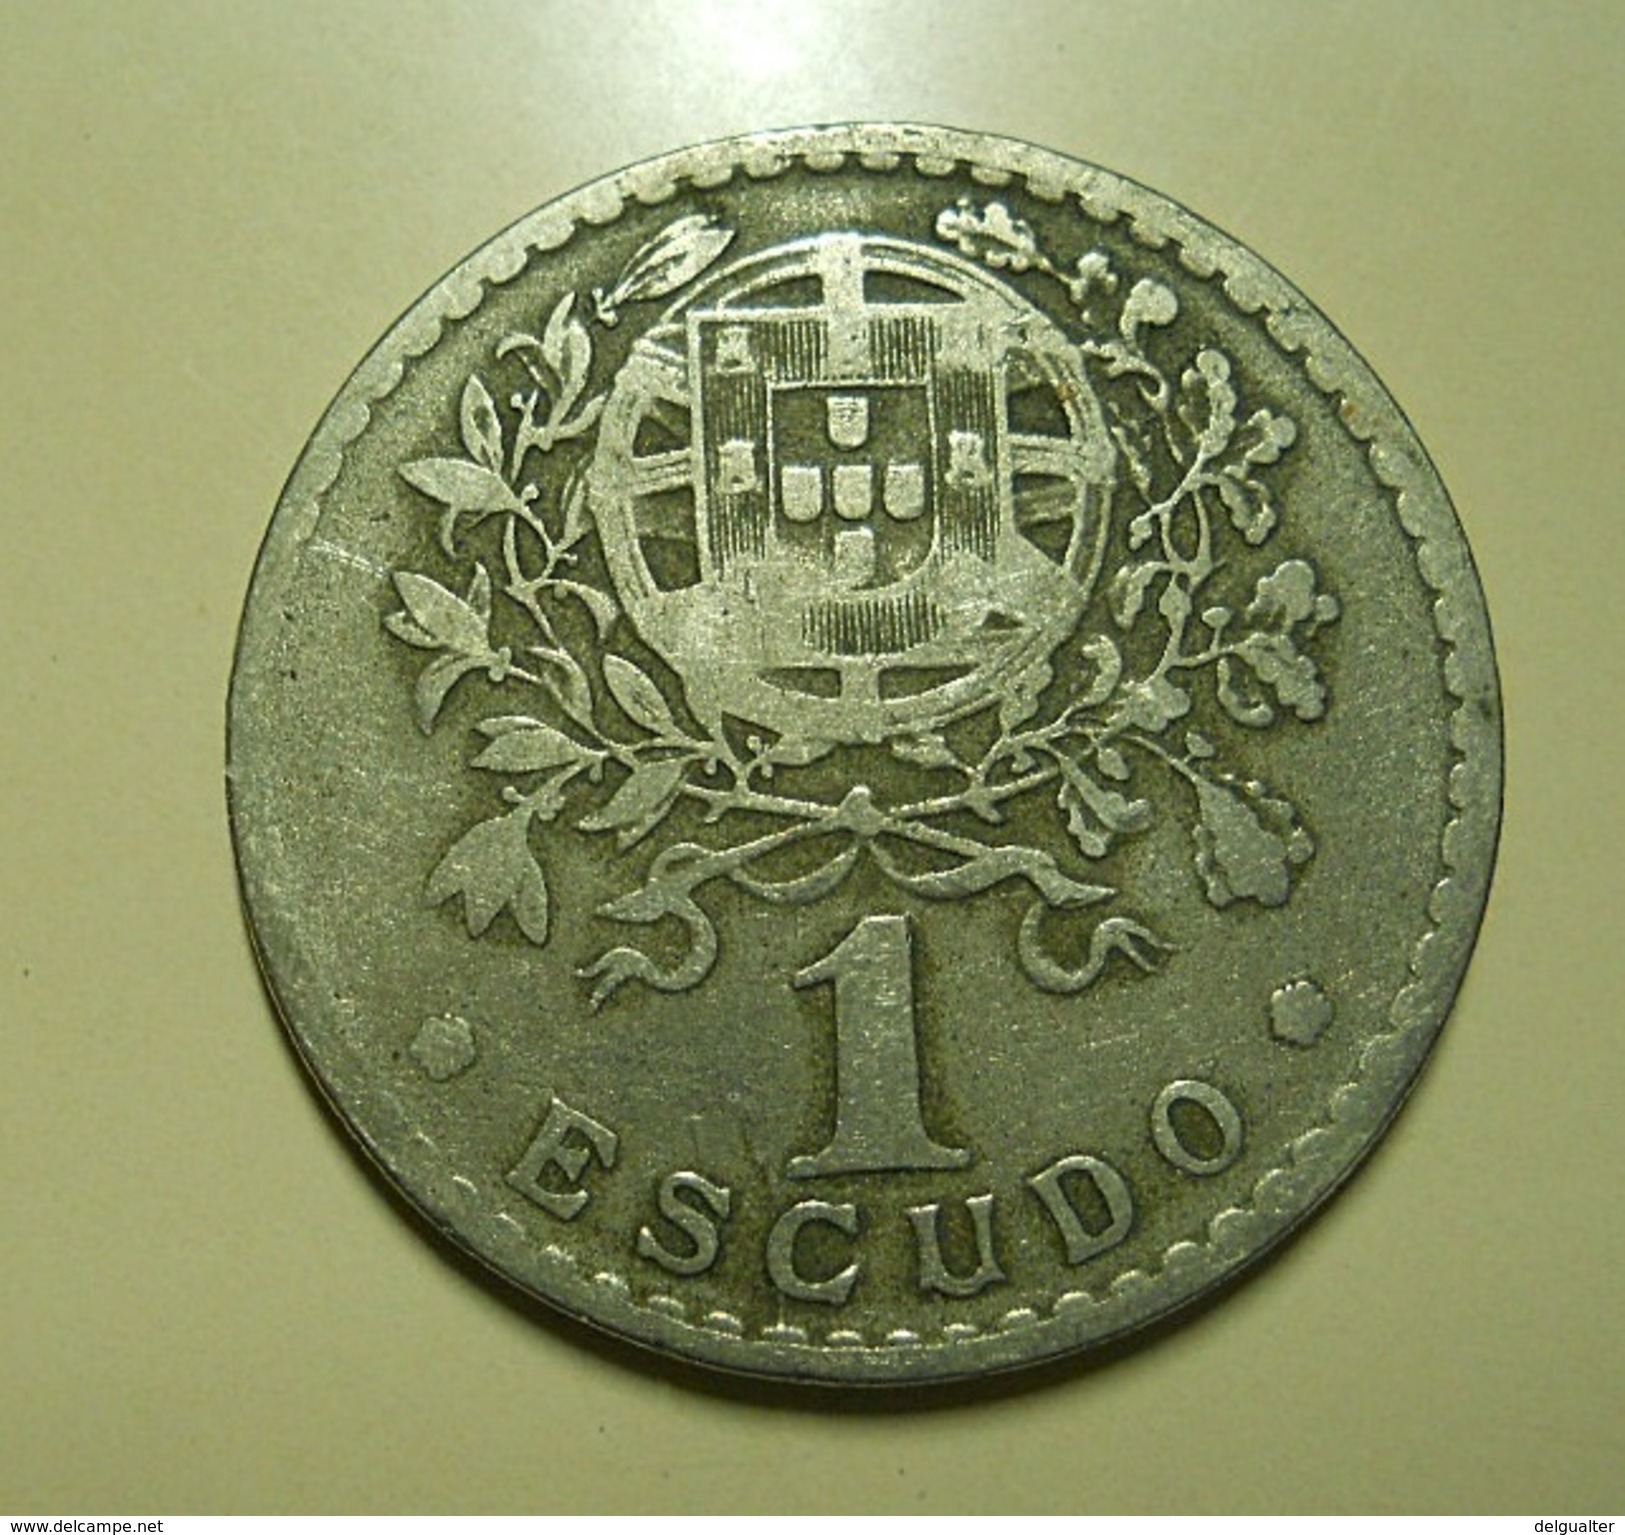 Portugal 1 Escudo 1939 - Portugal